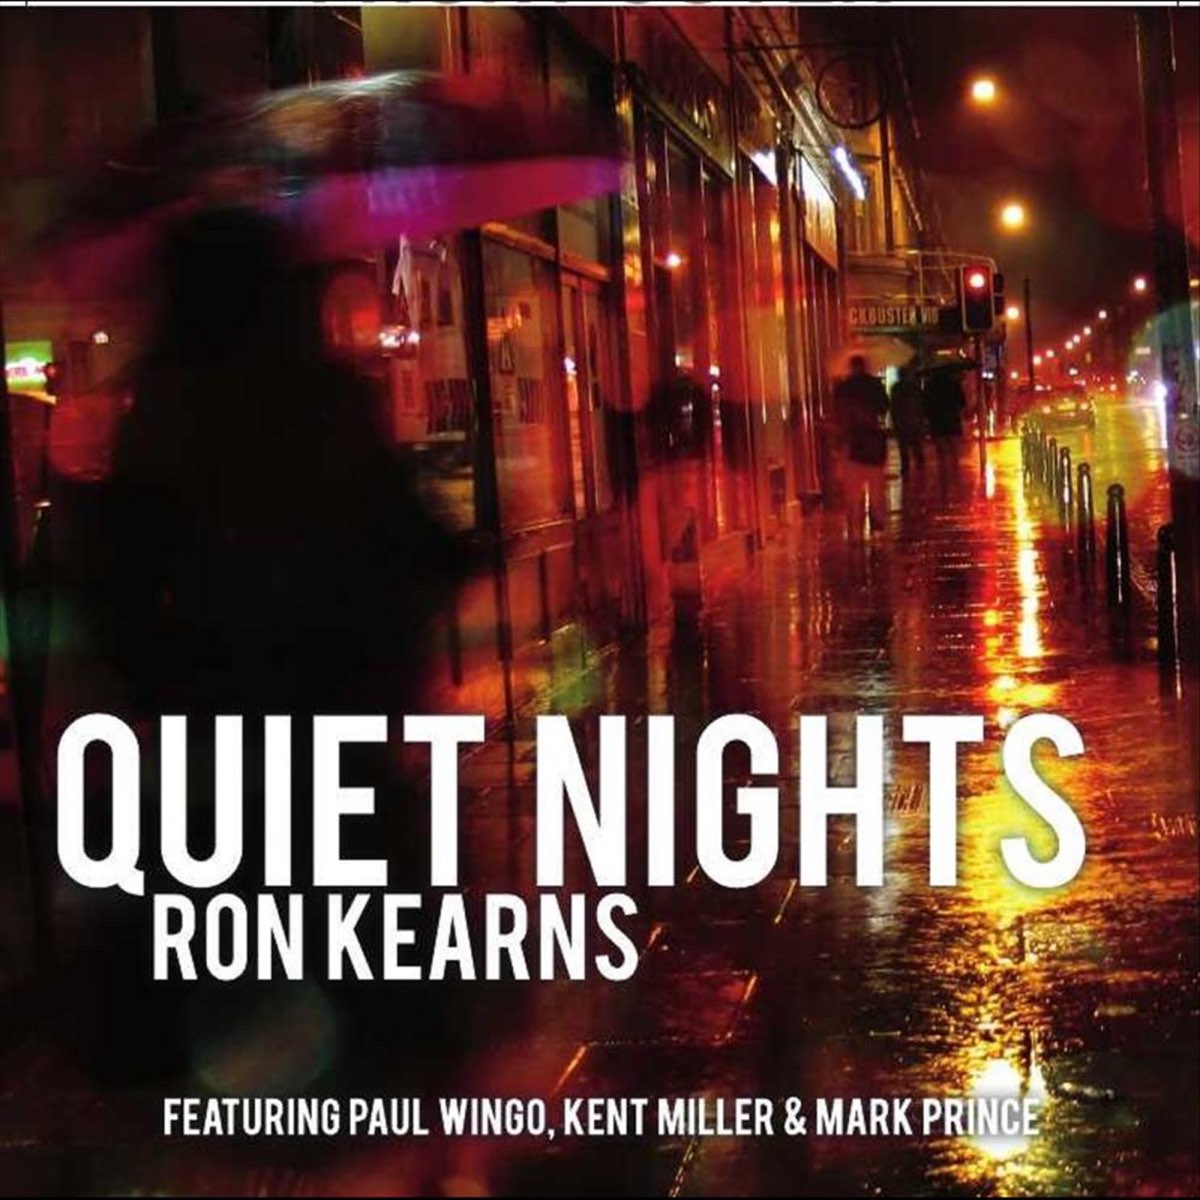 Quite night. Kent Miller. Diana Krall quiet Nights. J. Kent Miller.